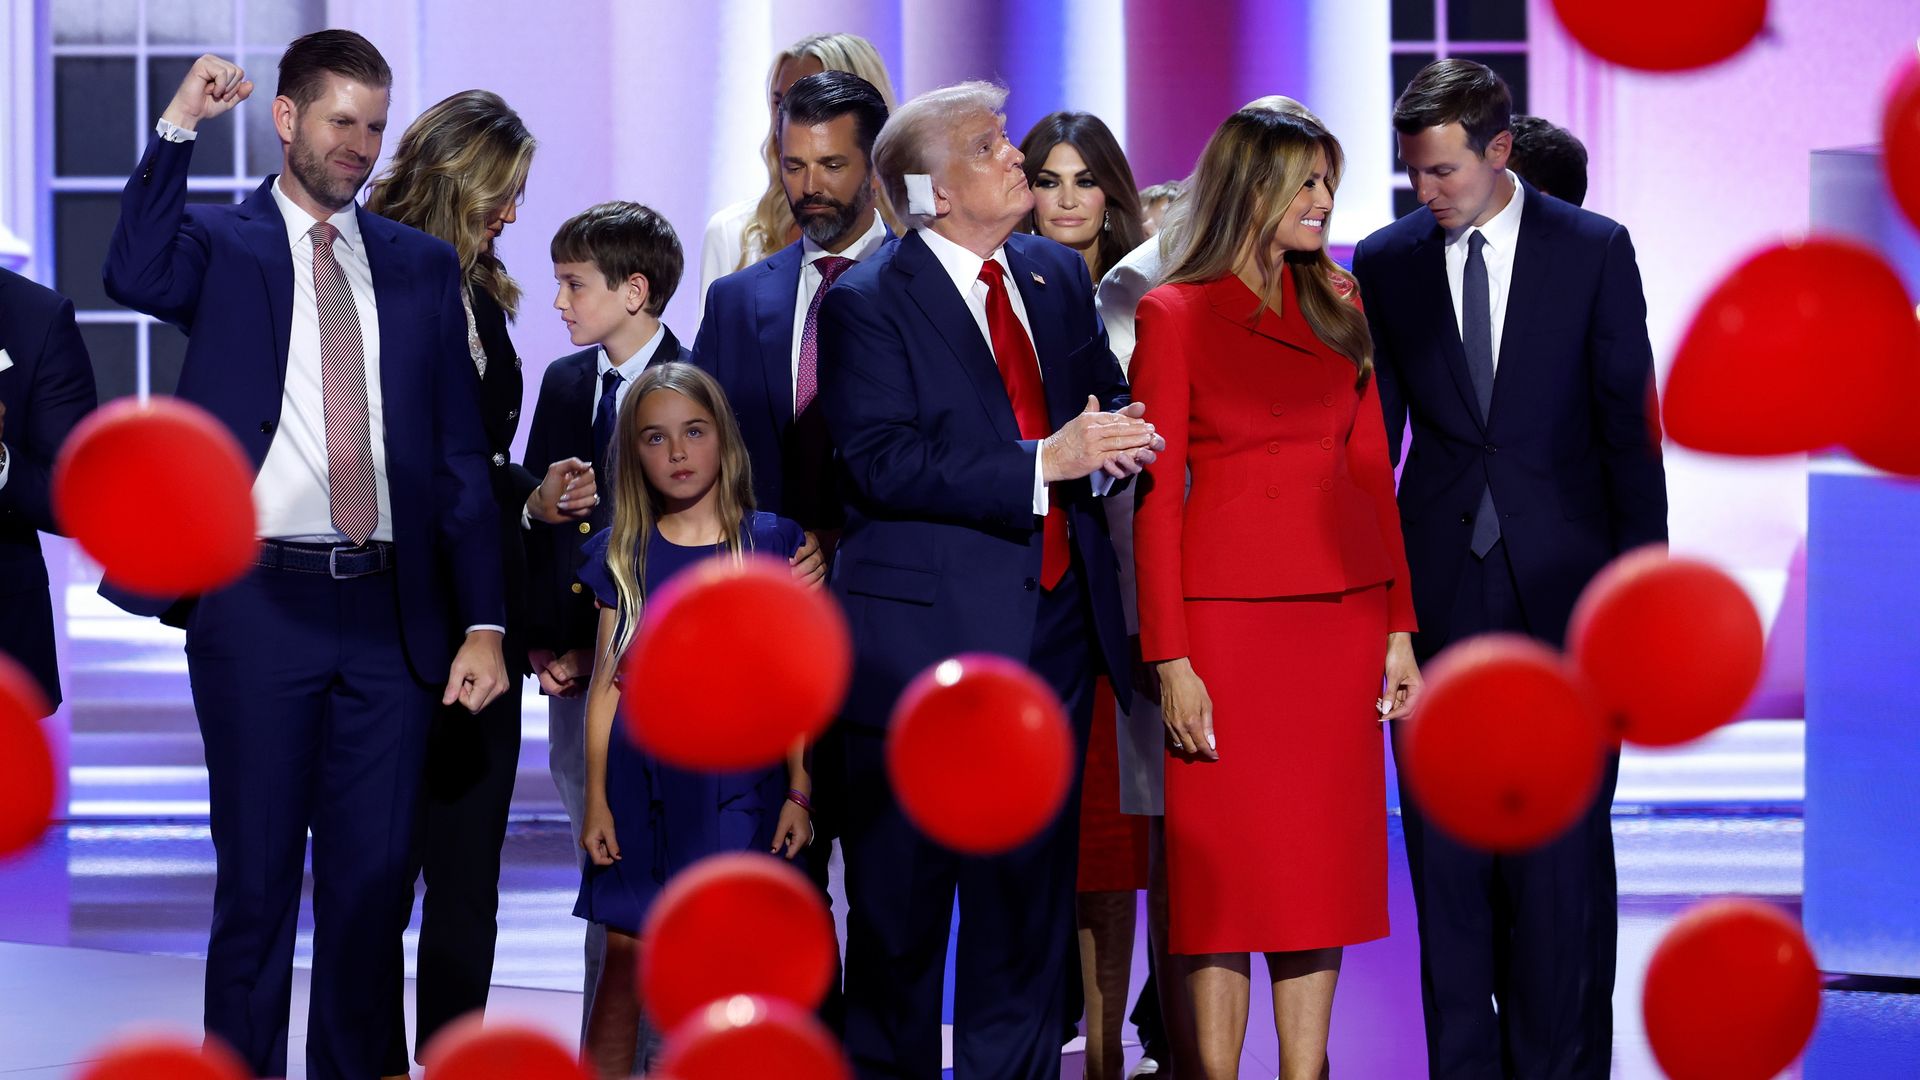 La familia Trump al completo apoyando al candidato a la presidencia por el Partido Republicano